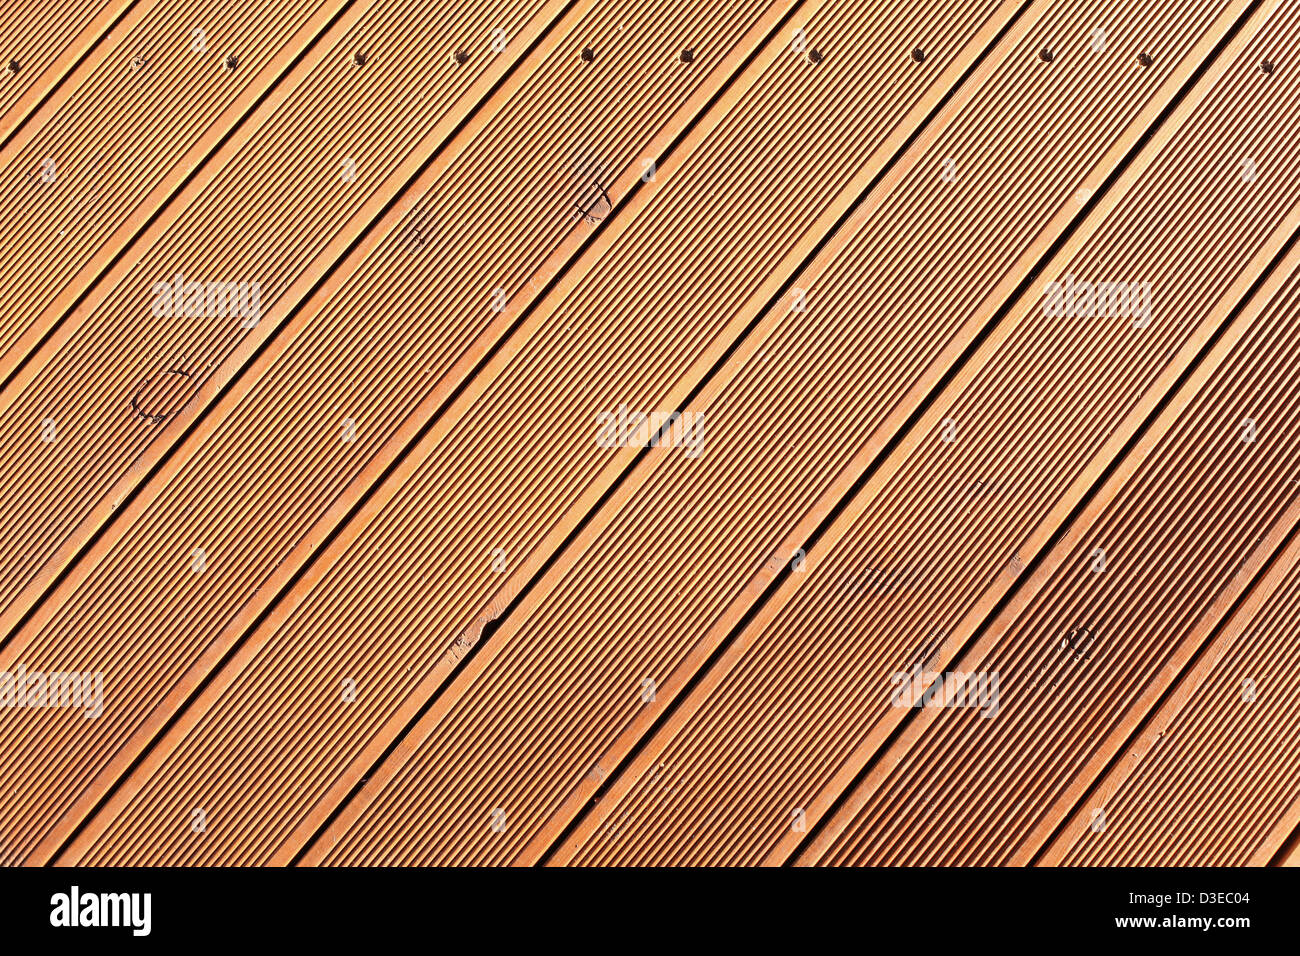 Sfondo di legno con diagonale di schede madri. Foto Stock